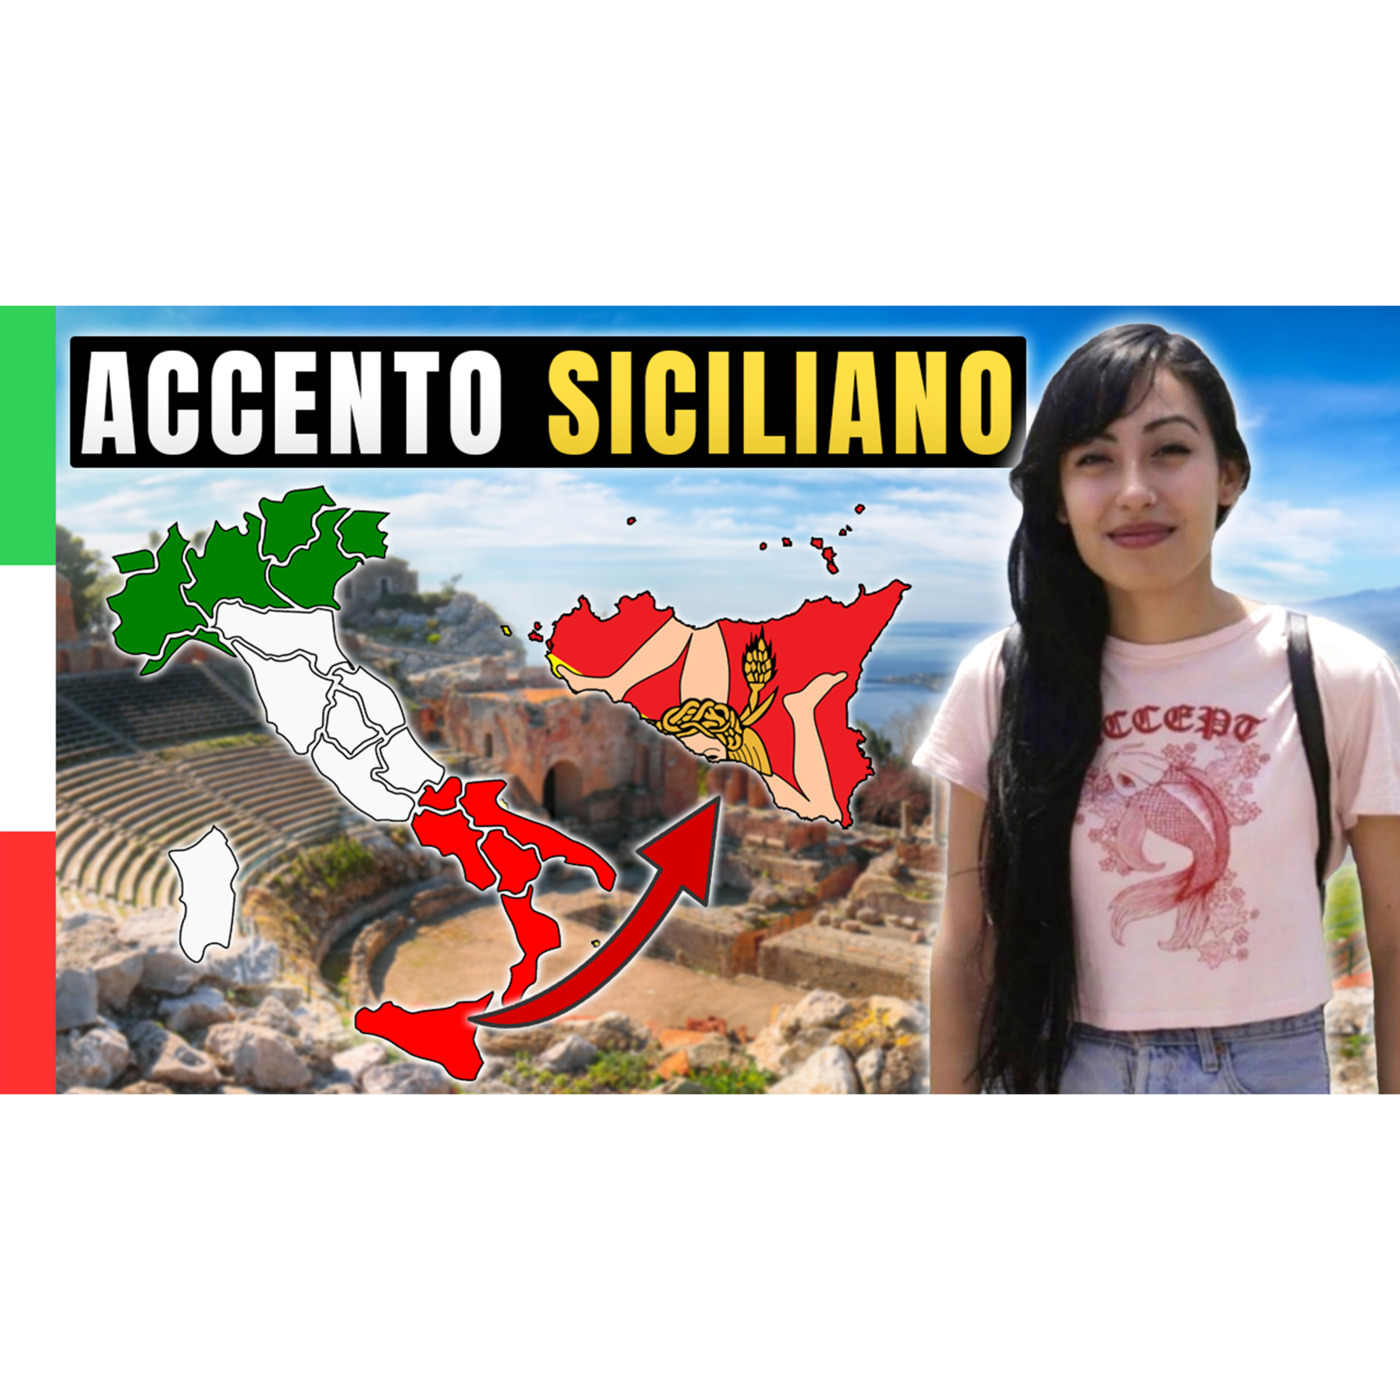 Episode 528: Vi Presento Miranda e l’accento Siciliano | Imparare l’Italiano